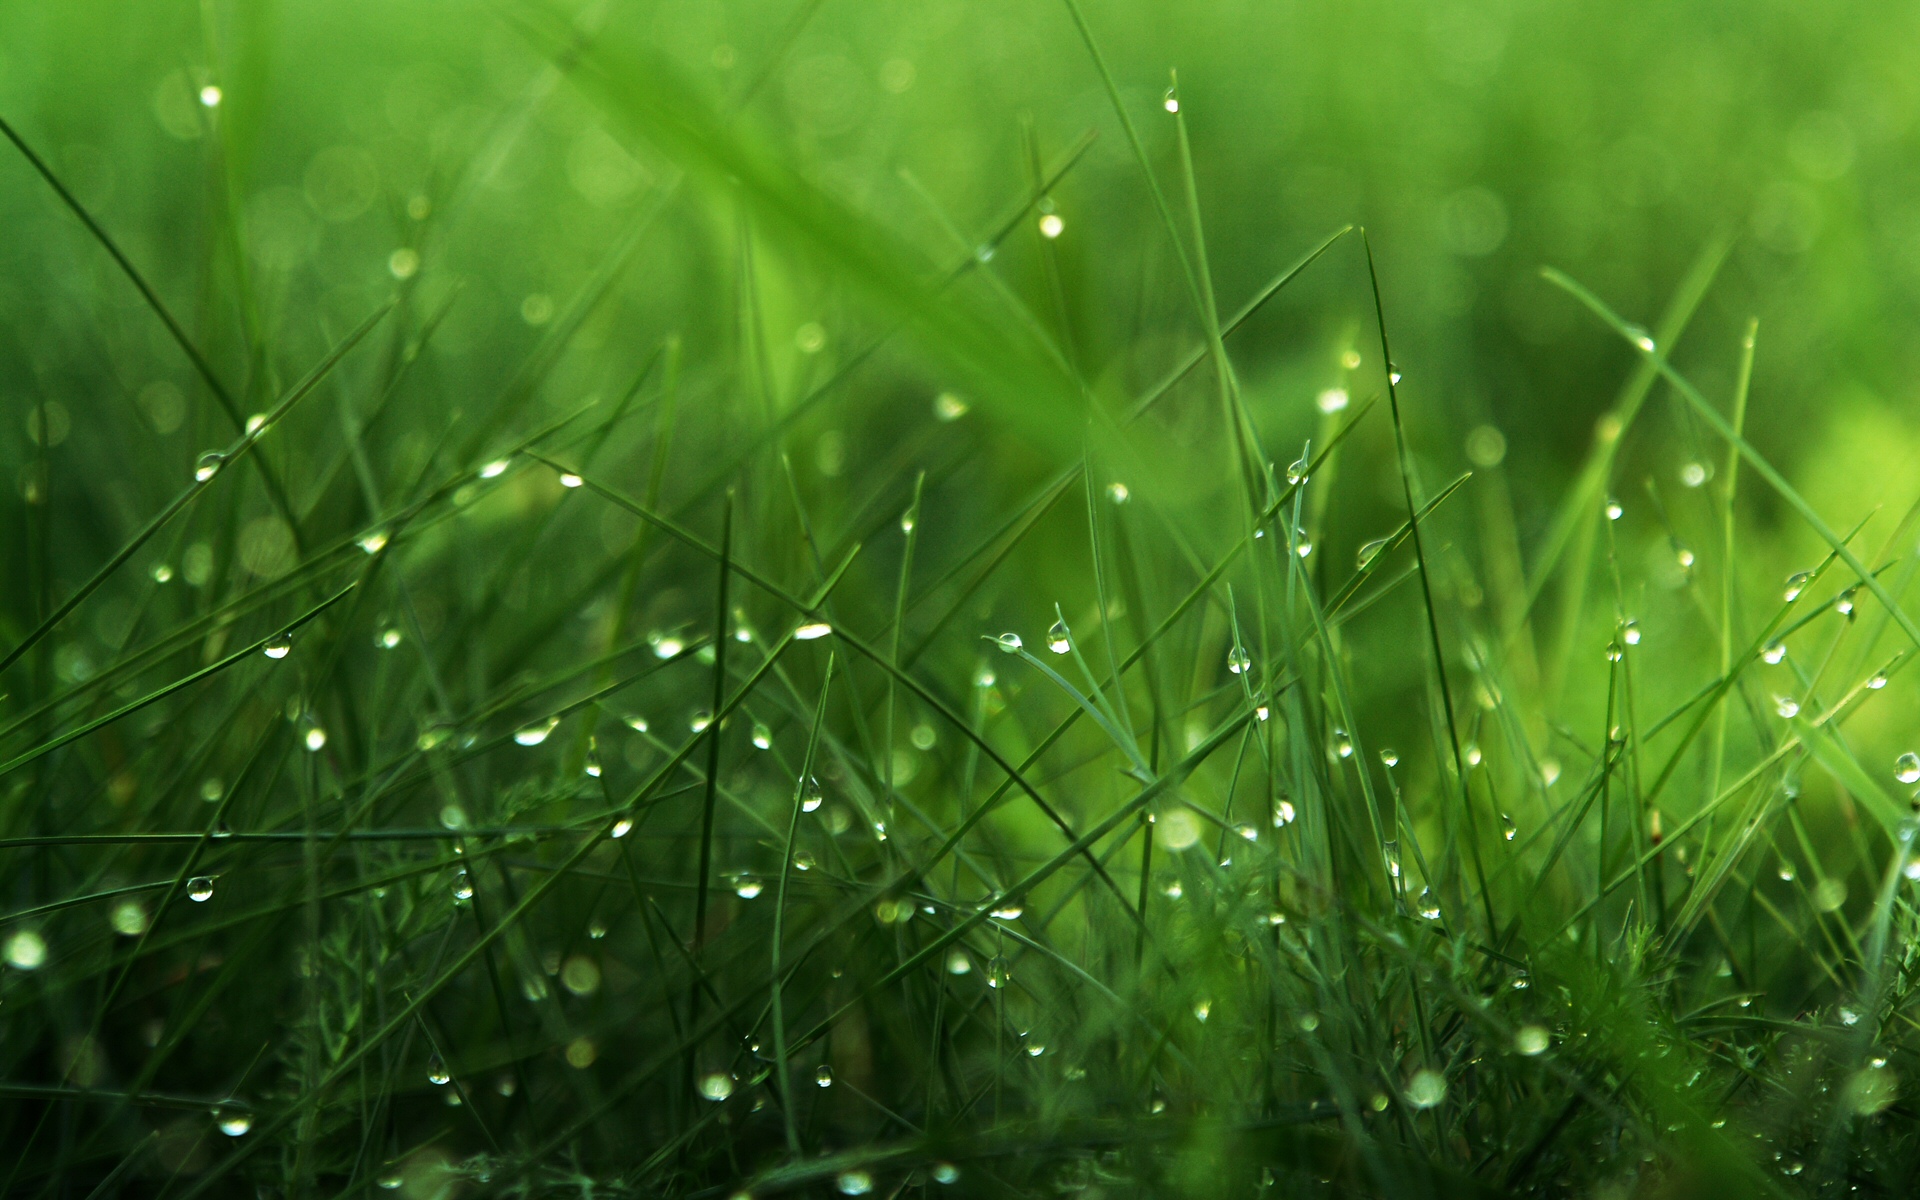 full green grass image